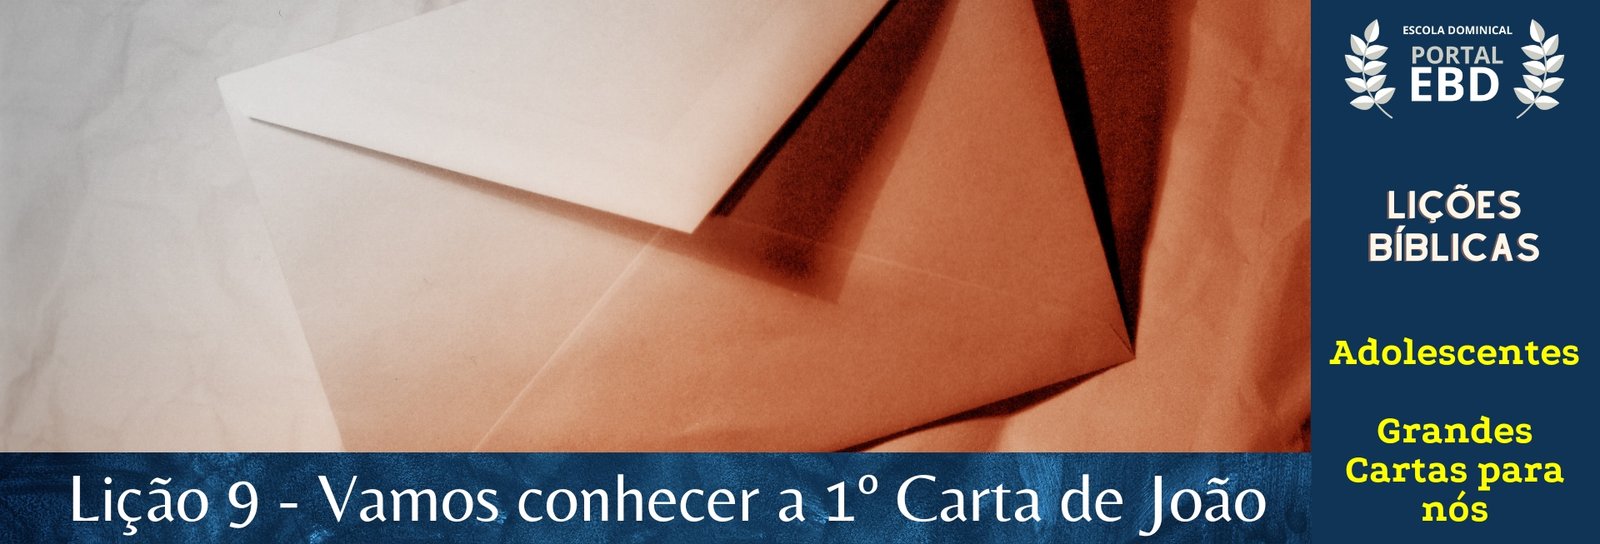 Lição 9 - Vamos conhecer a 1ª Carta de João II